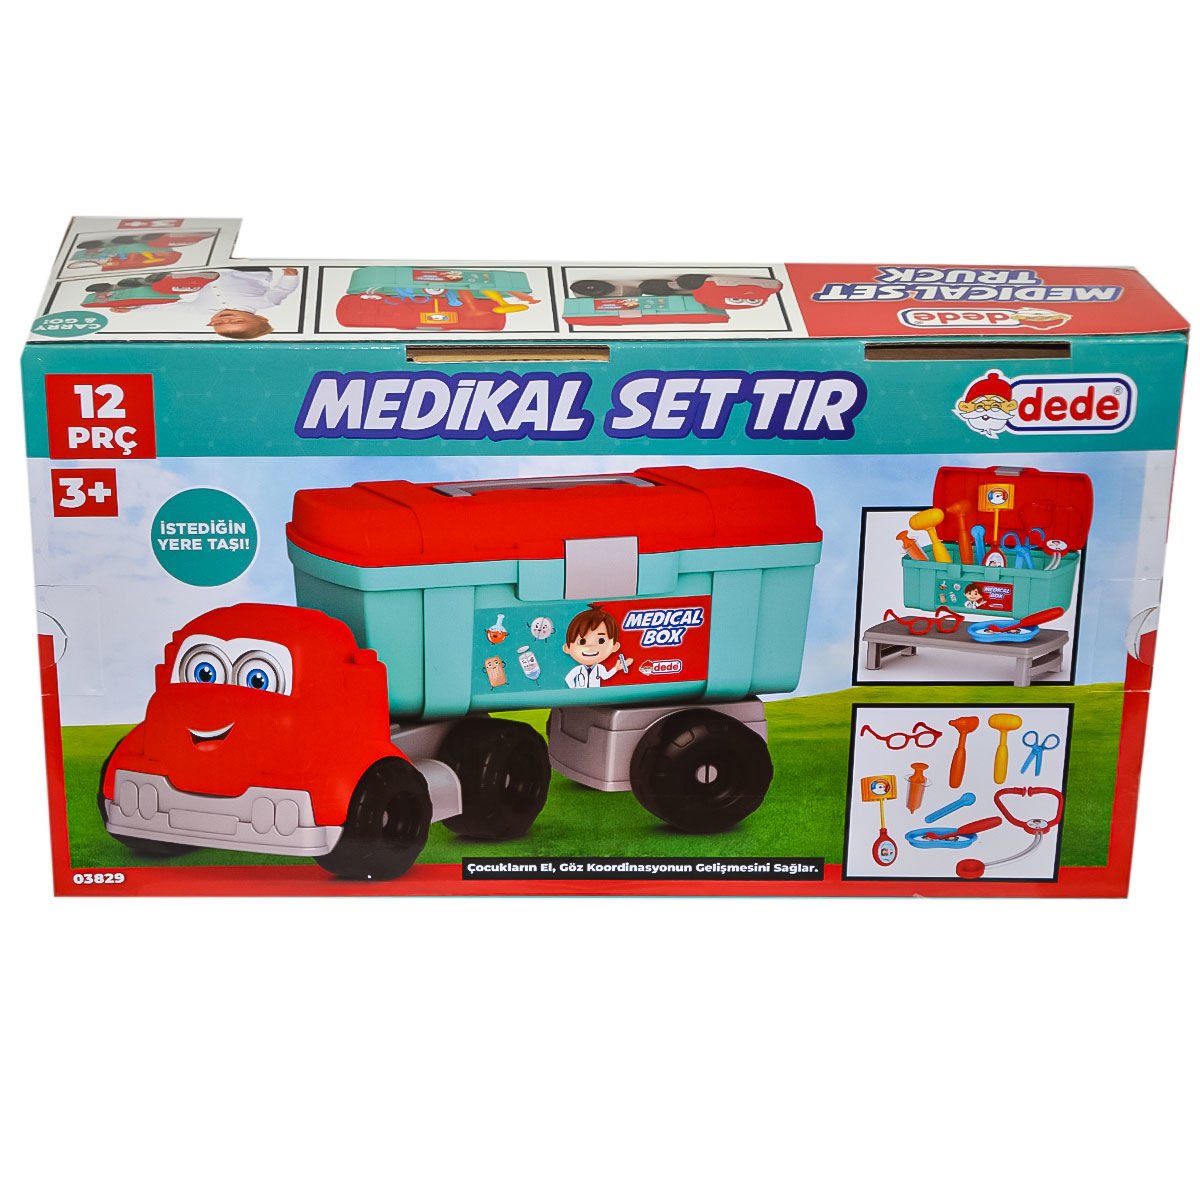 03829 Medikal Set Tır - Fen Toys